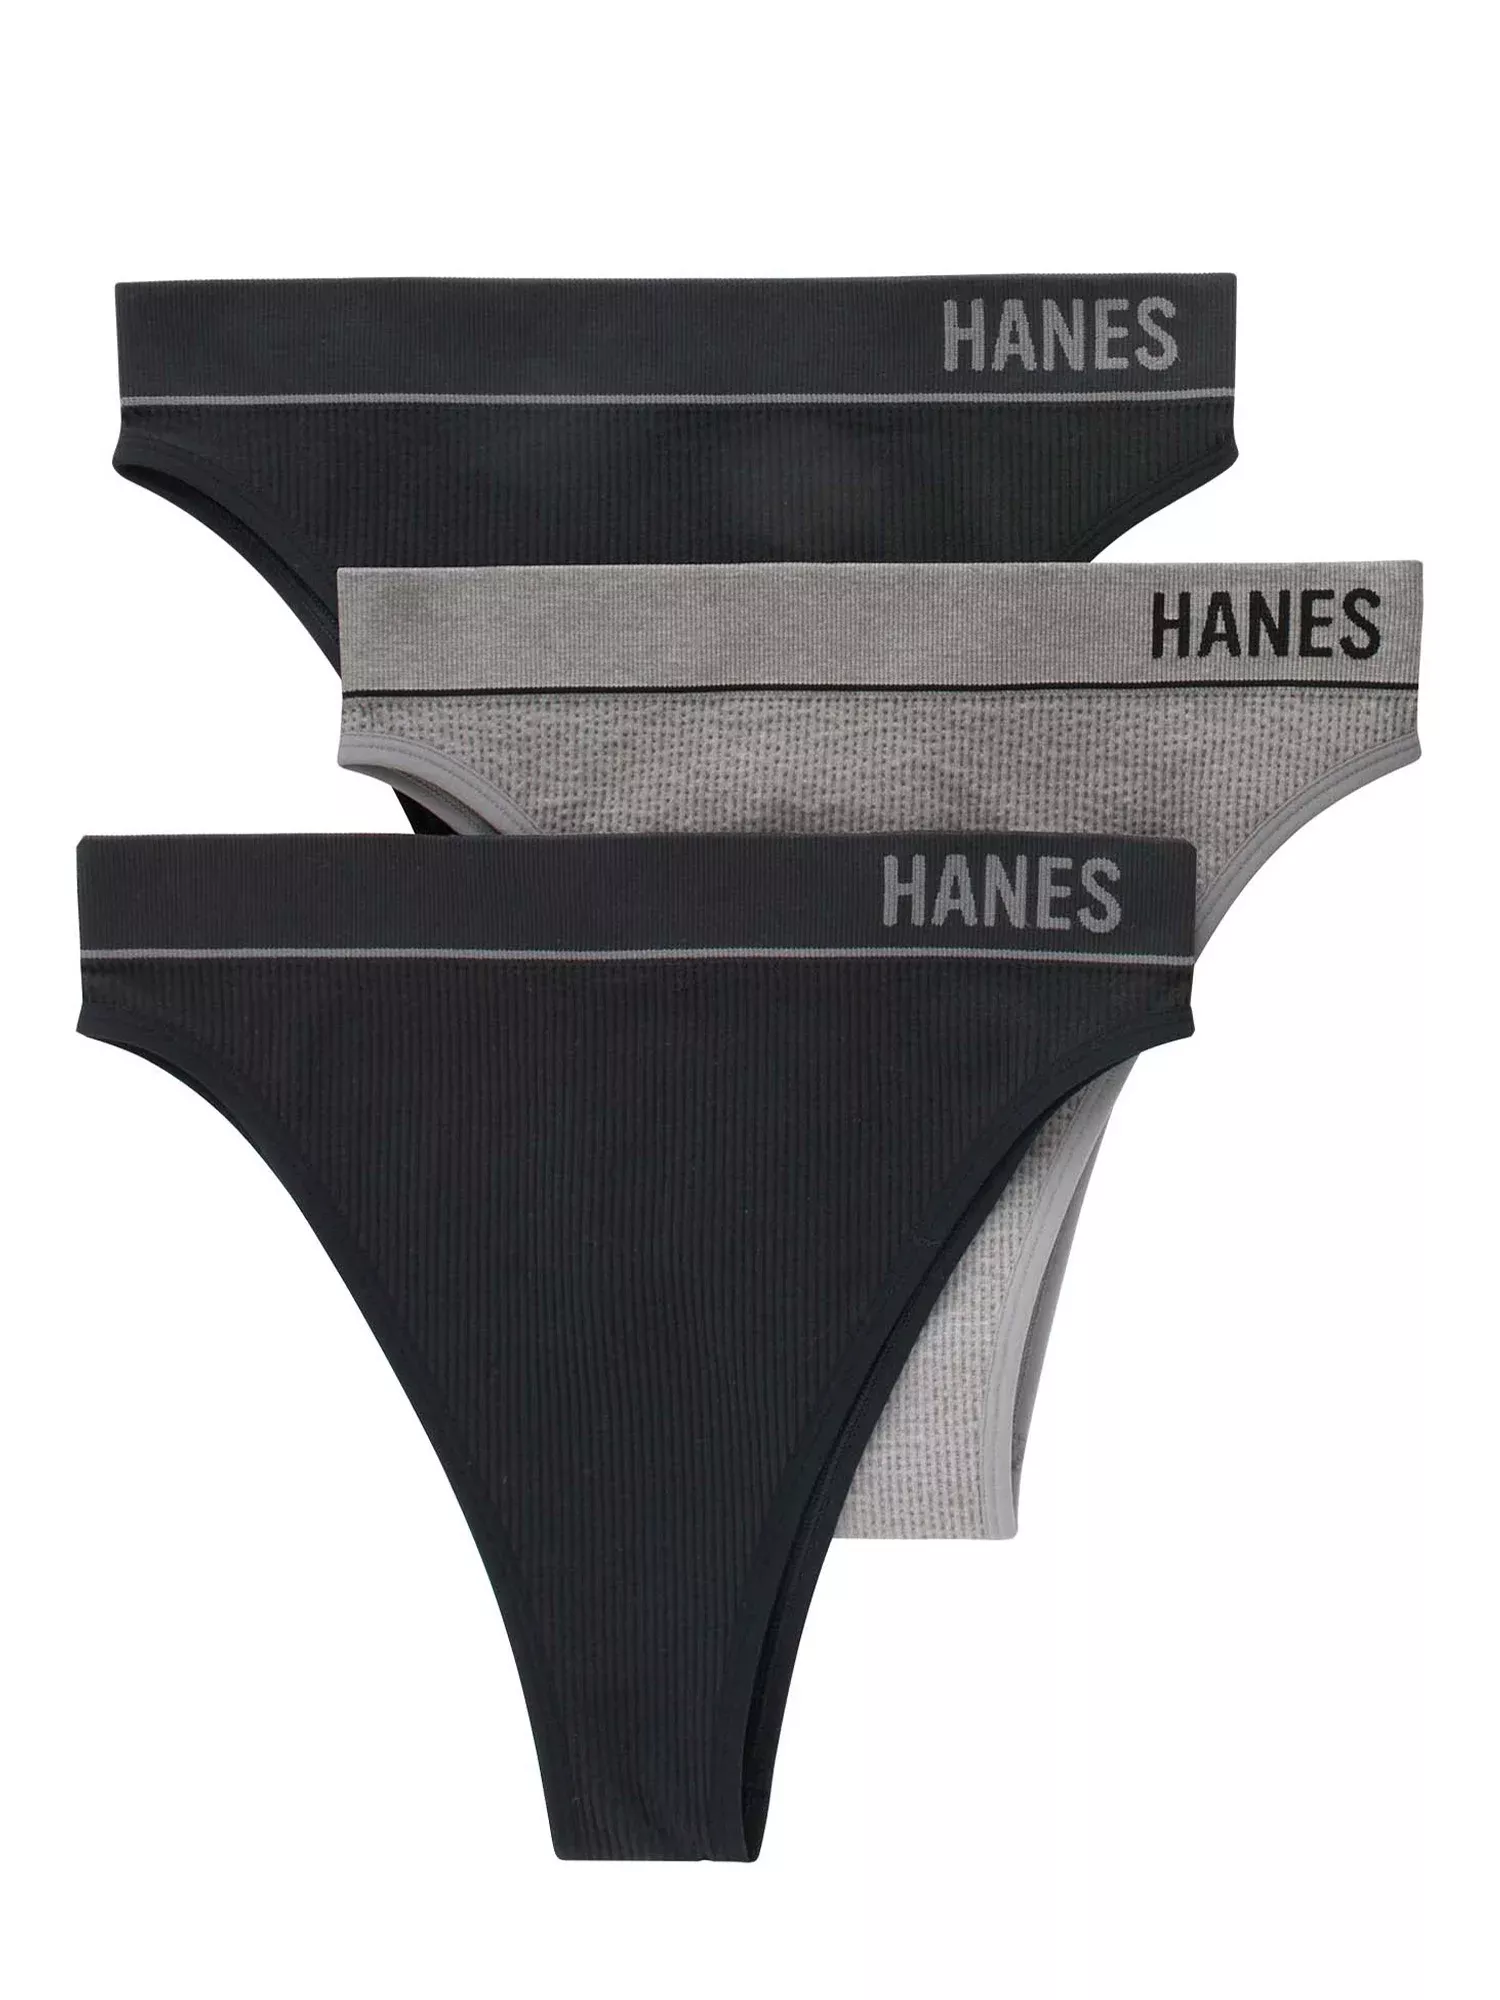 Hanes Originals Women's Seamless Rib Boyfit Underwear, 3-Pack 